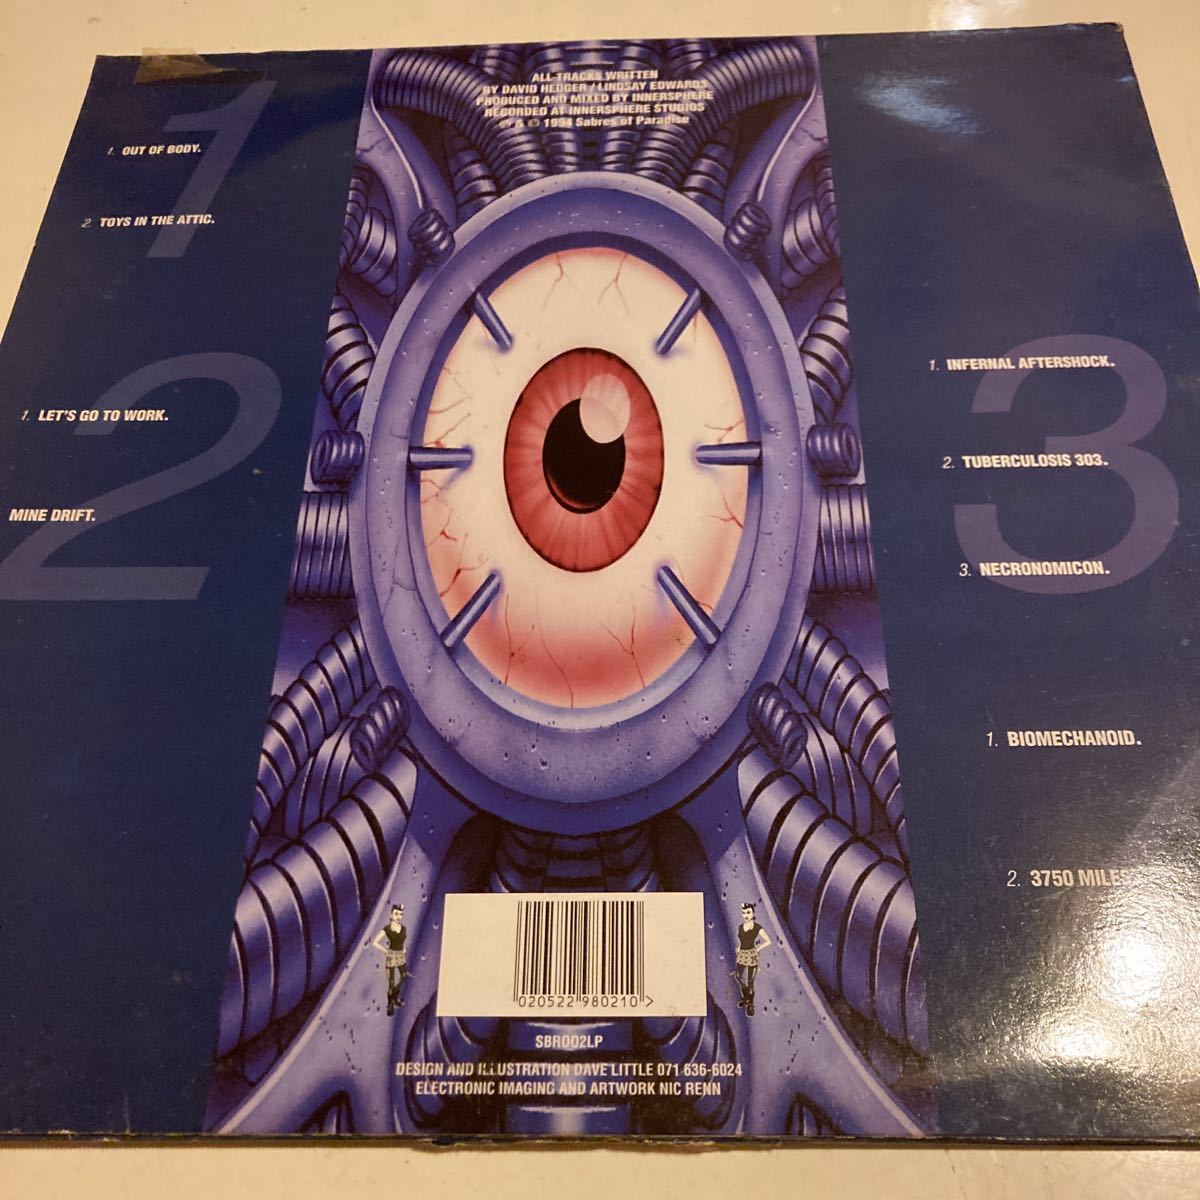 2枚組 Innersphere Outer Works 1994年 Sabrettes SBR002LP Trance, Breaks, Acid, Hardcore, Techno, House_画像2